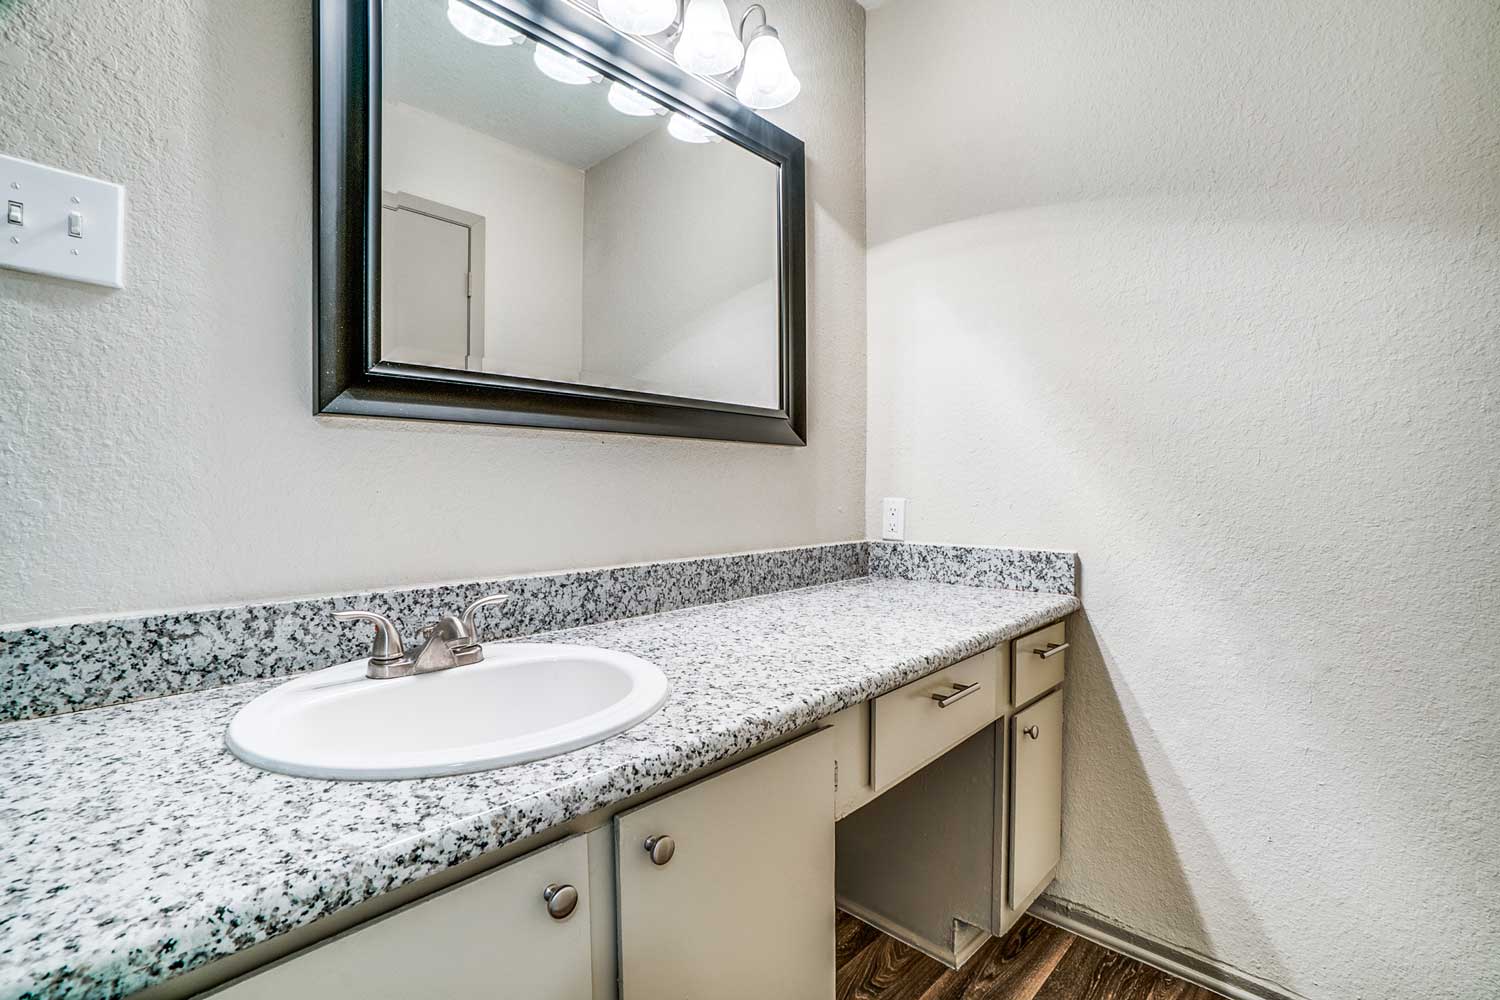 Bathroom at Riviera Apartments in Dallas, Texas